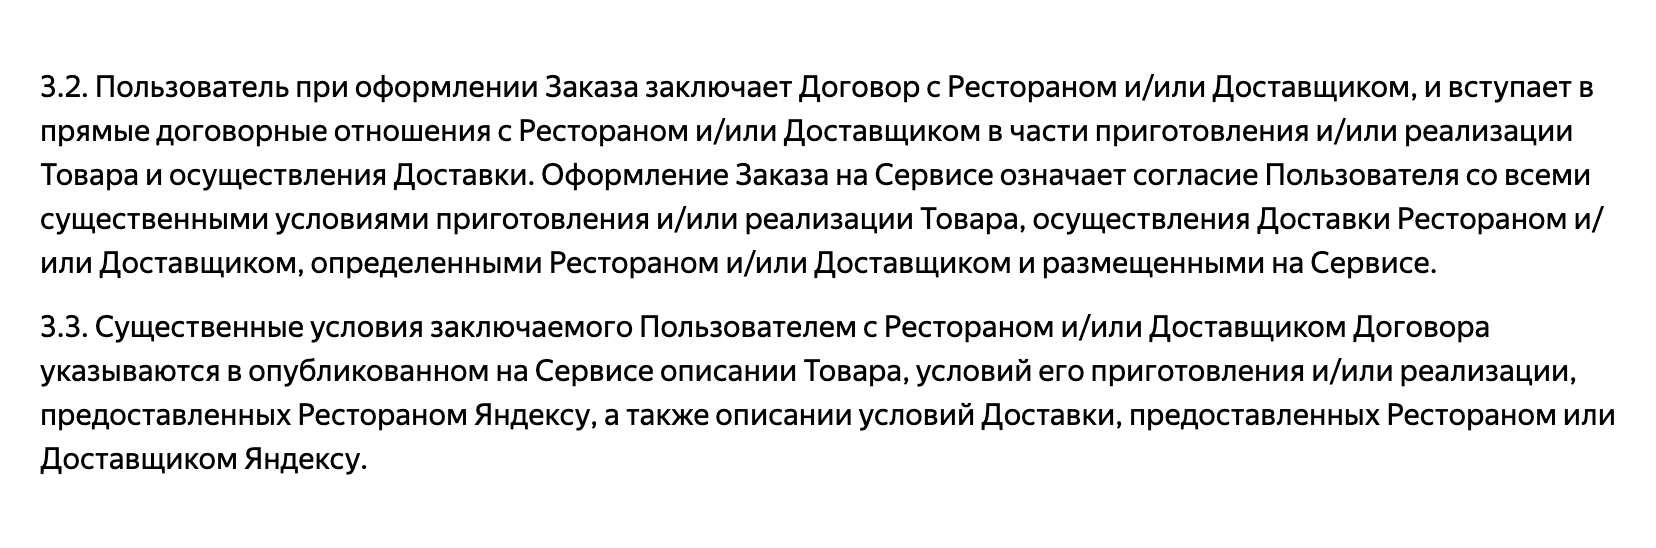 А «Яндекс-еда» вообще предоставляет только информационные услуги — доставкой занимается доставщик или сам ресторан